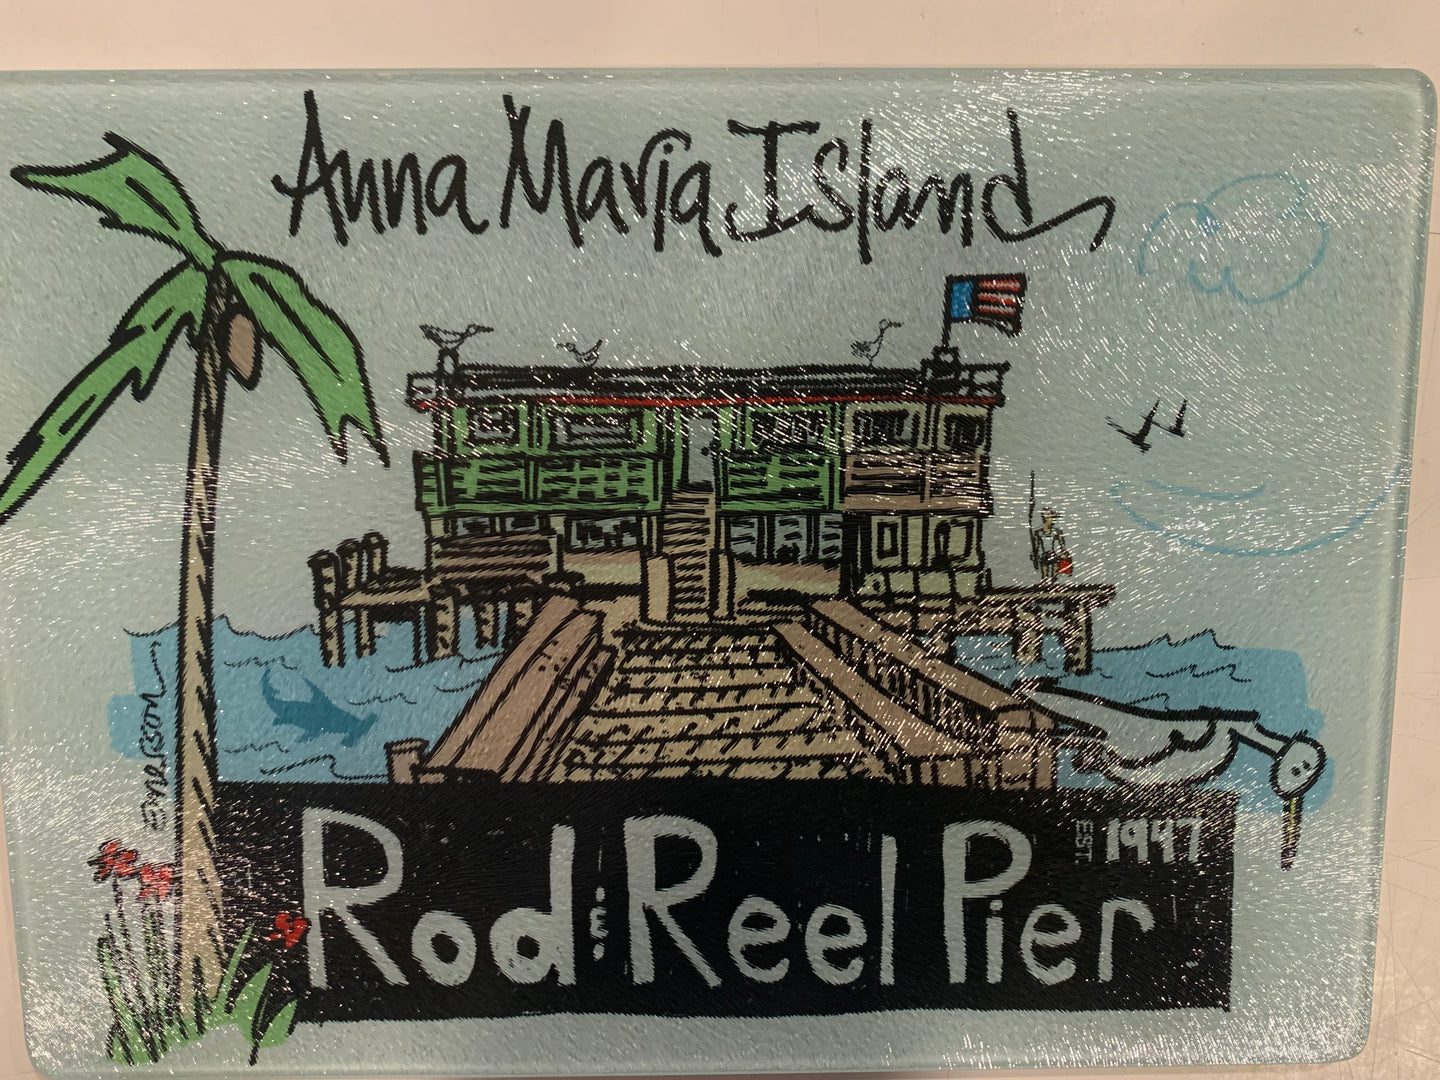 Rod & Reel Pier  Cutting Board/Hot Plate